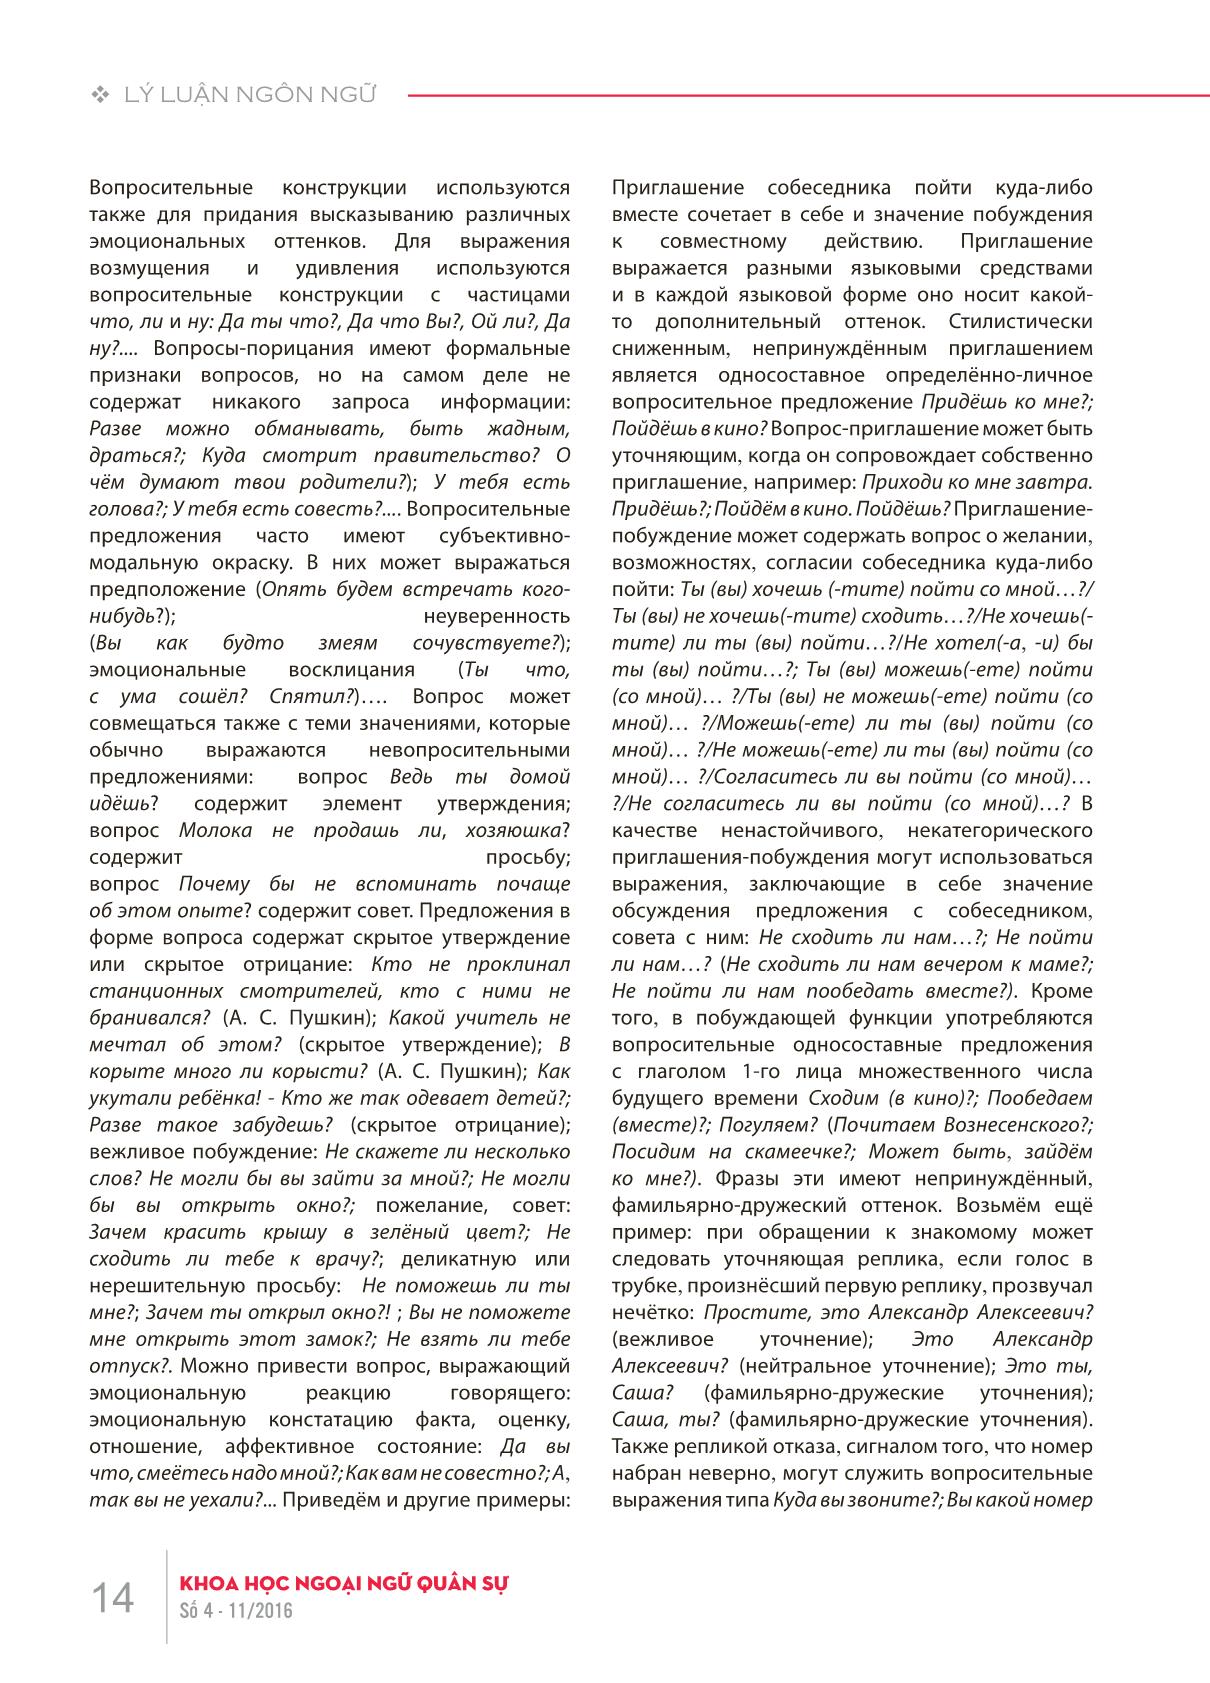 Bình diện ngữ dụng của câu nghi vấn trong tiếng Nga trang 4